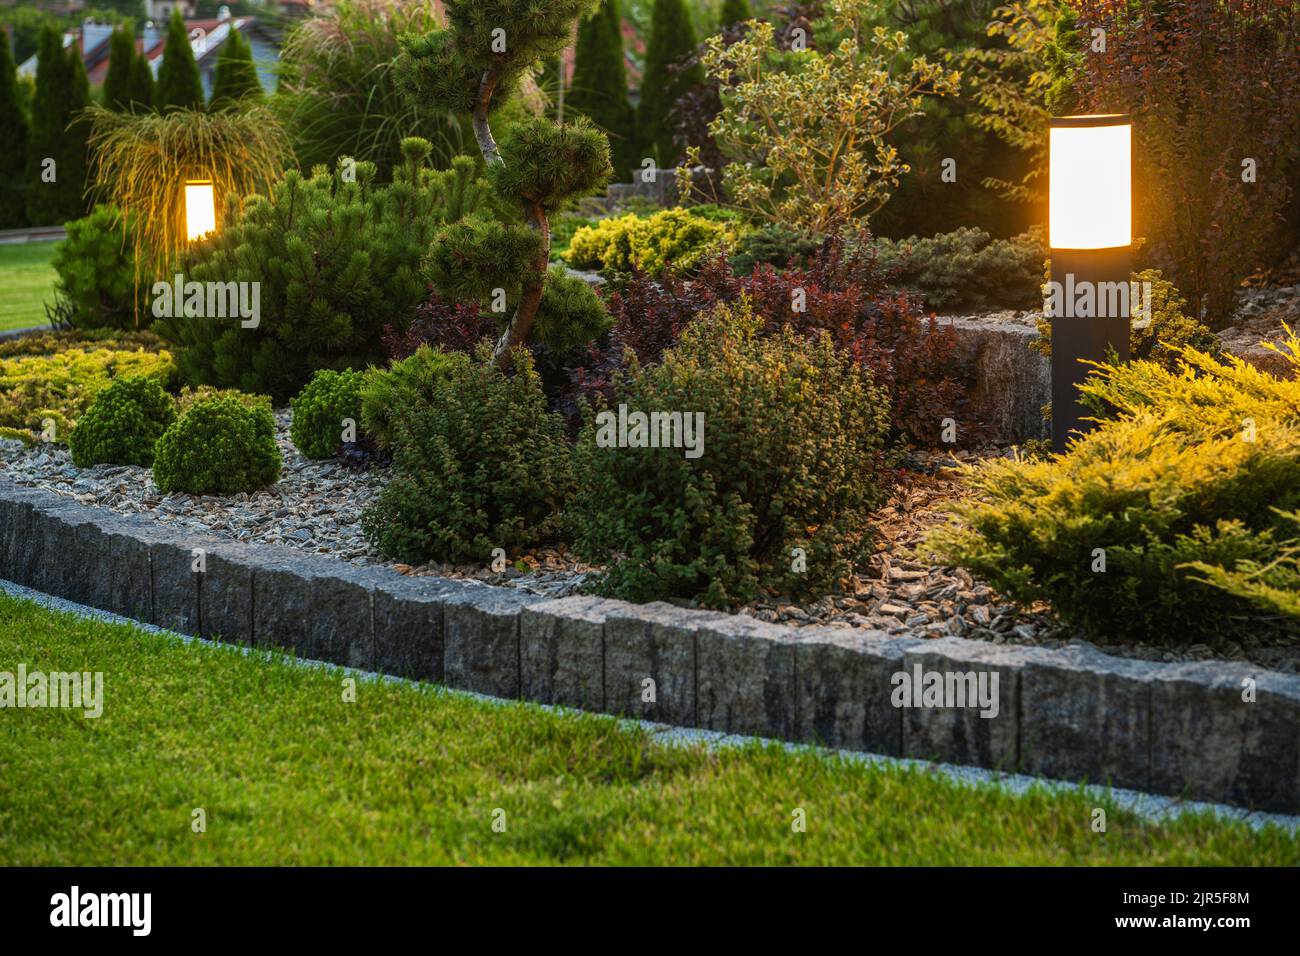 Moderne Outdoor-LED-Gartenbeleuchtung im schönen reifen Wohn-Garten. Thema Gartenarbeit und Landschaftsbau. Stockfoto